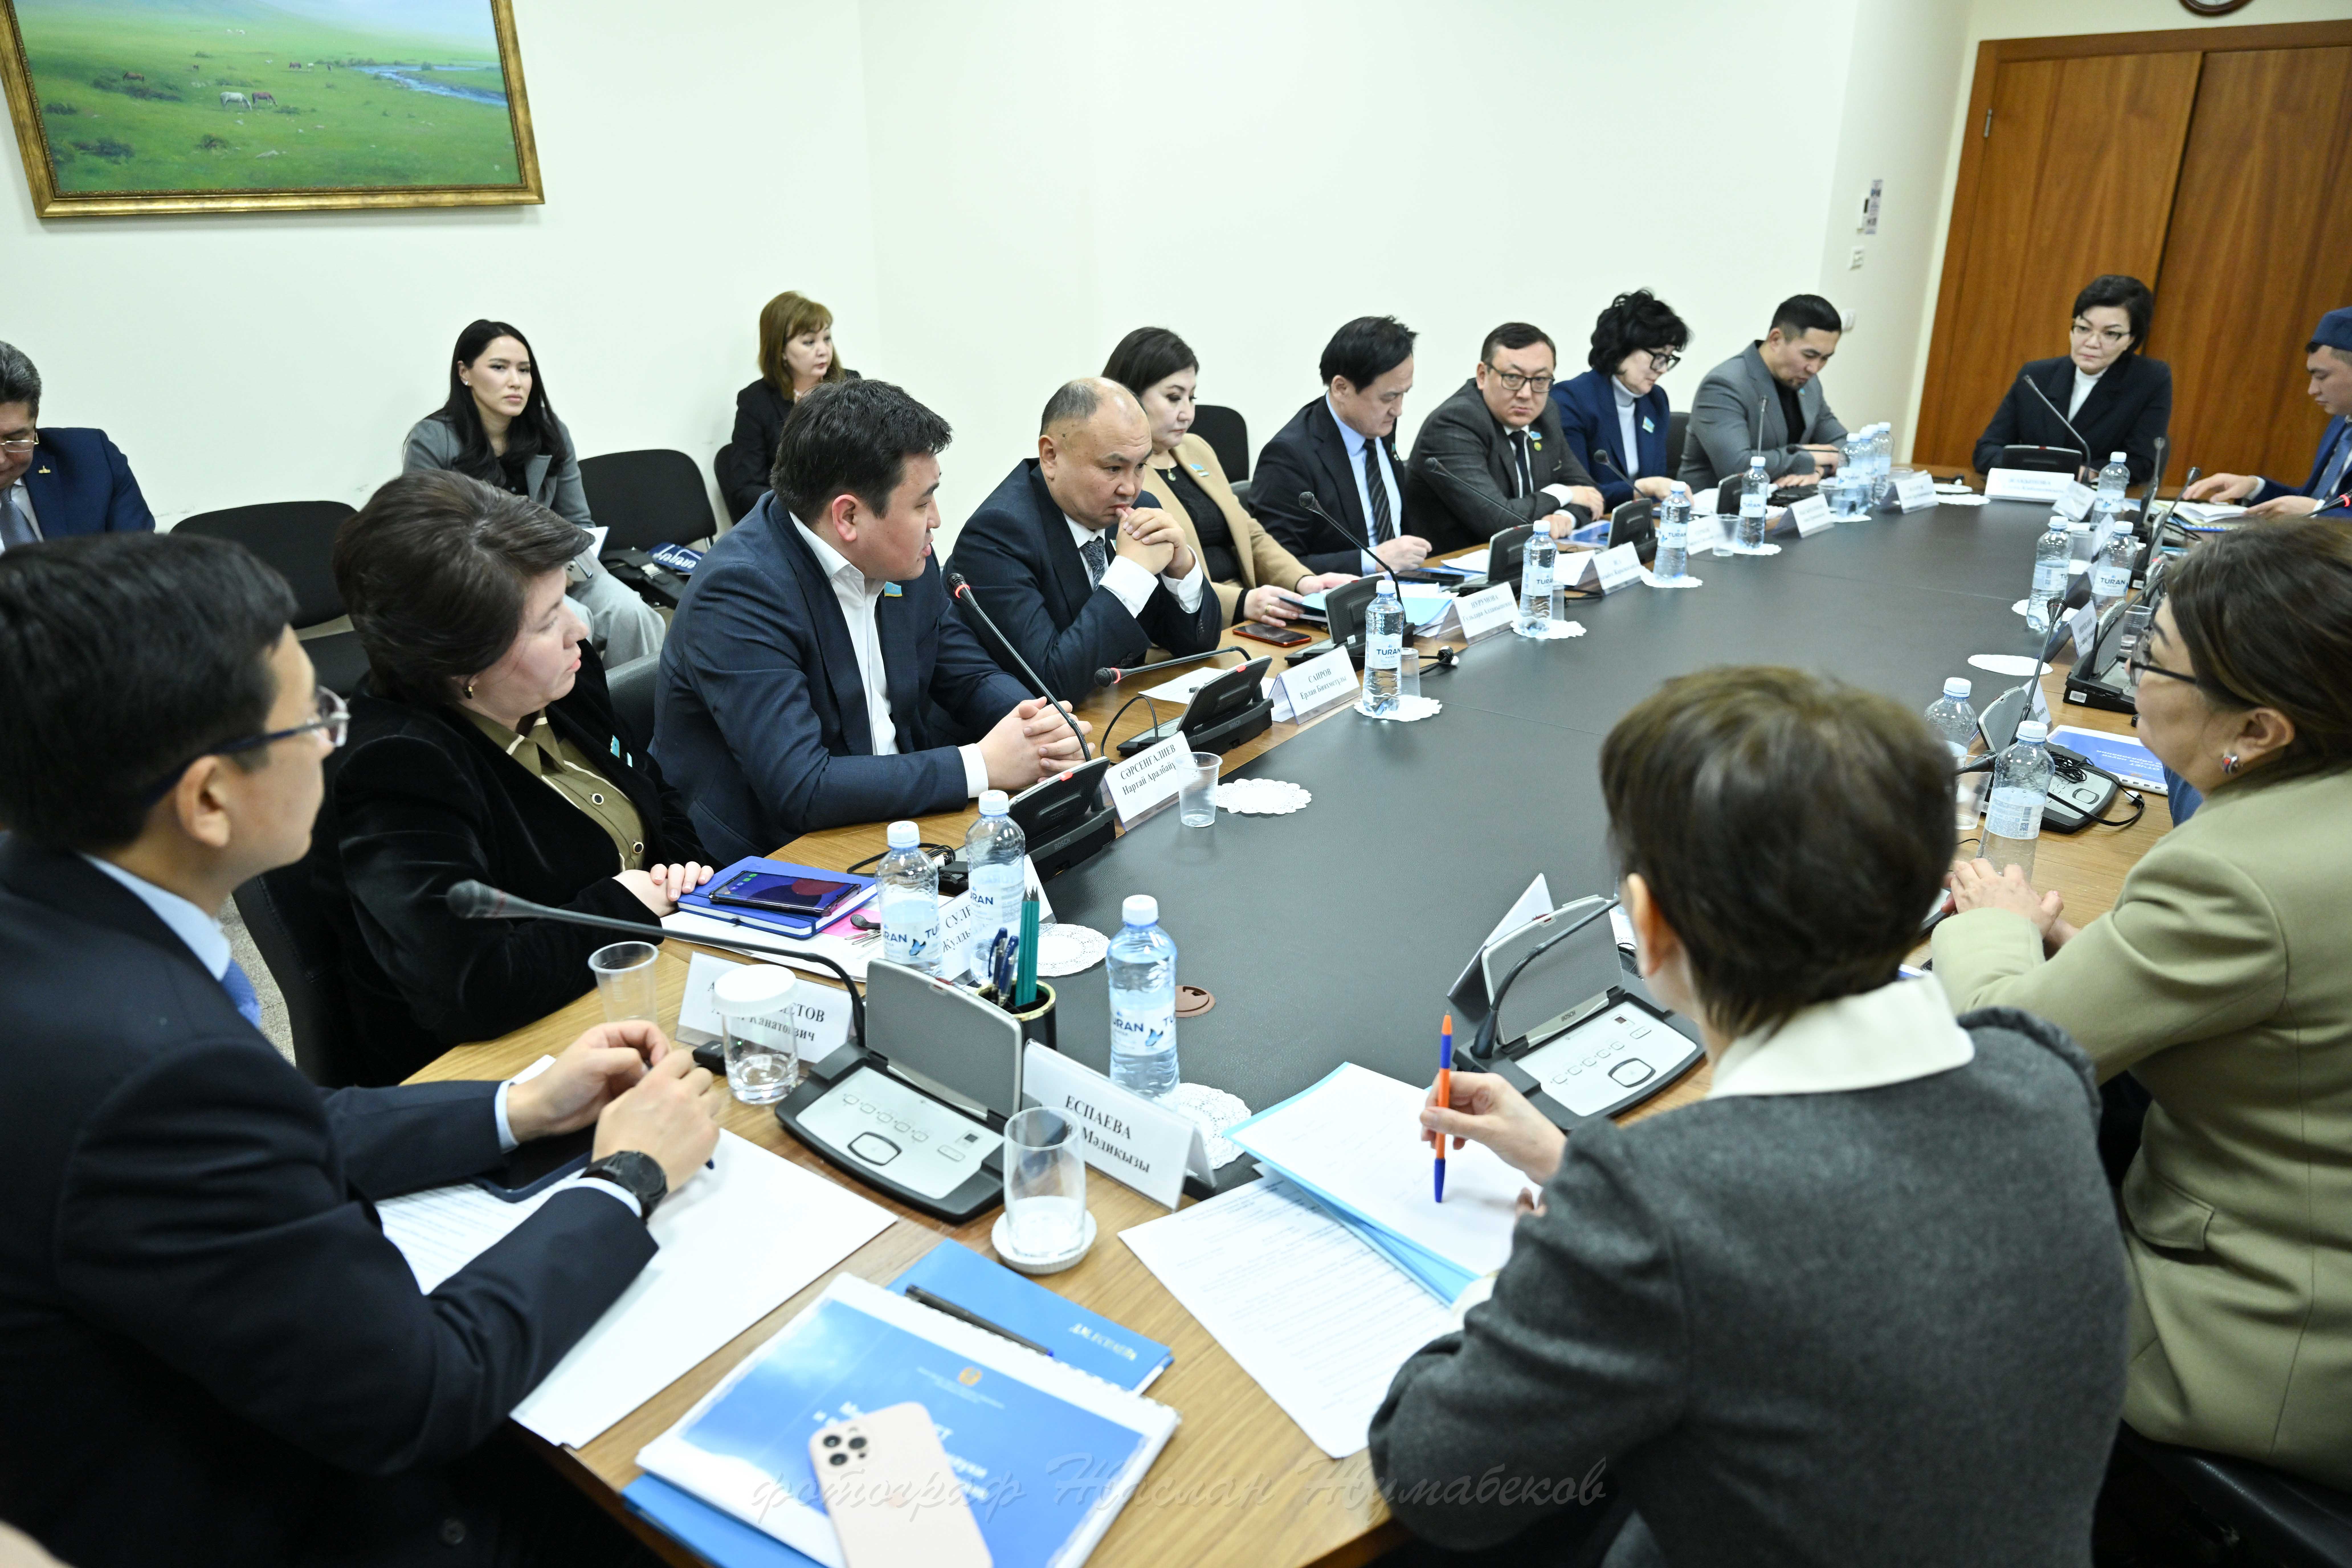 Еңбек және халықты әлеуметтік қорғау министрі лауазымына кандидатураны келісу